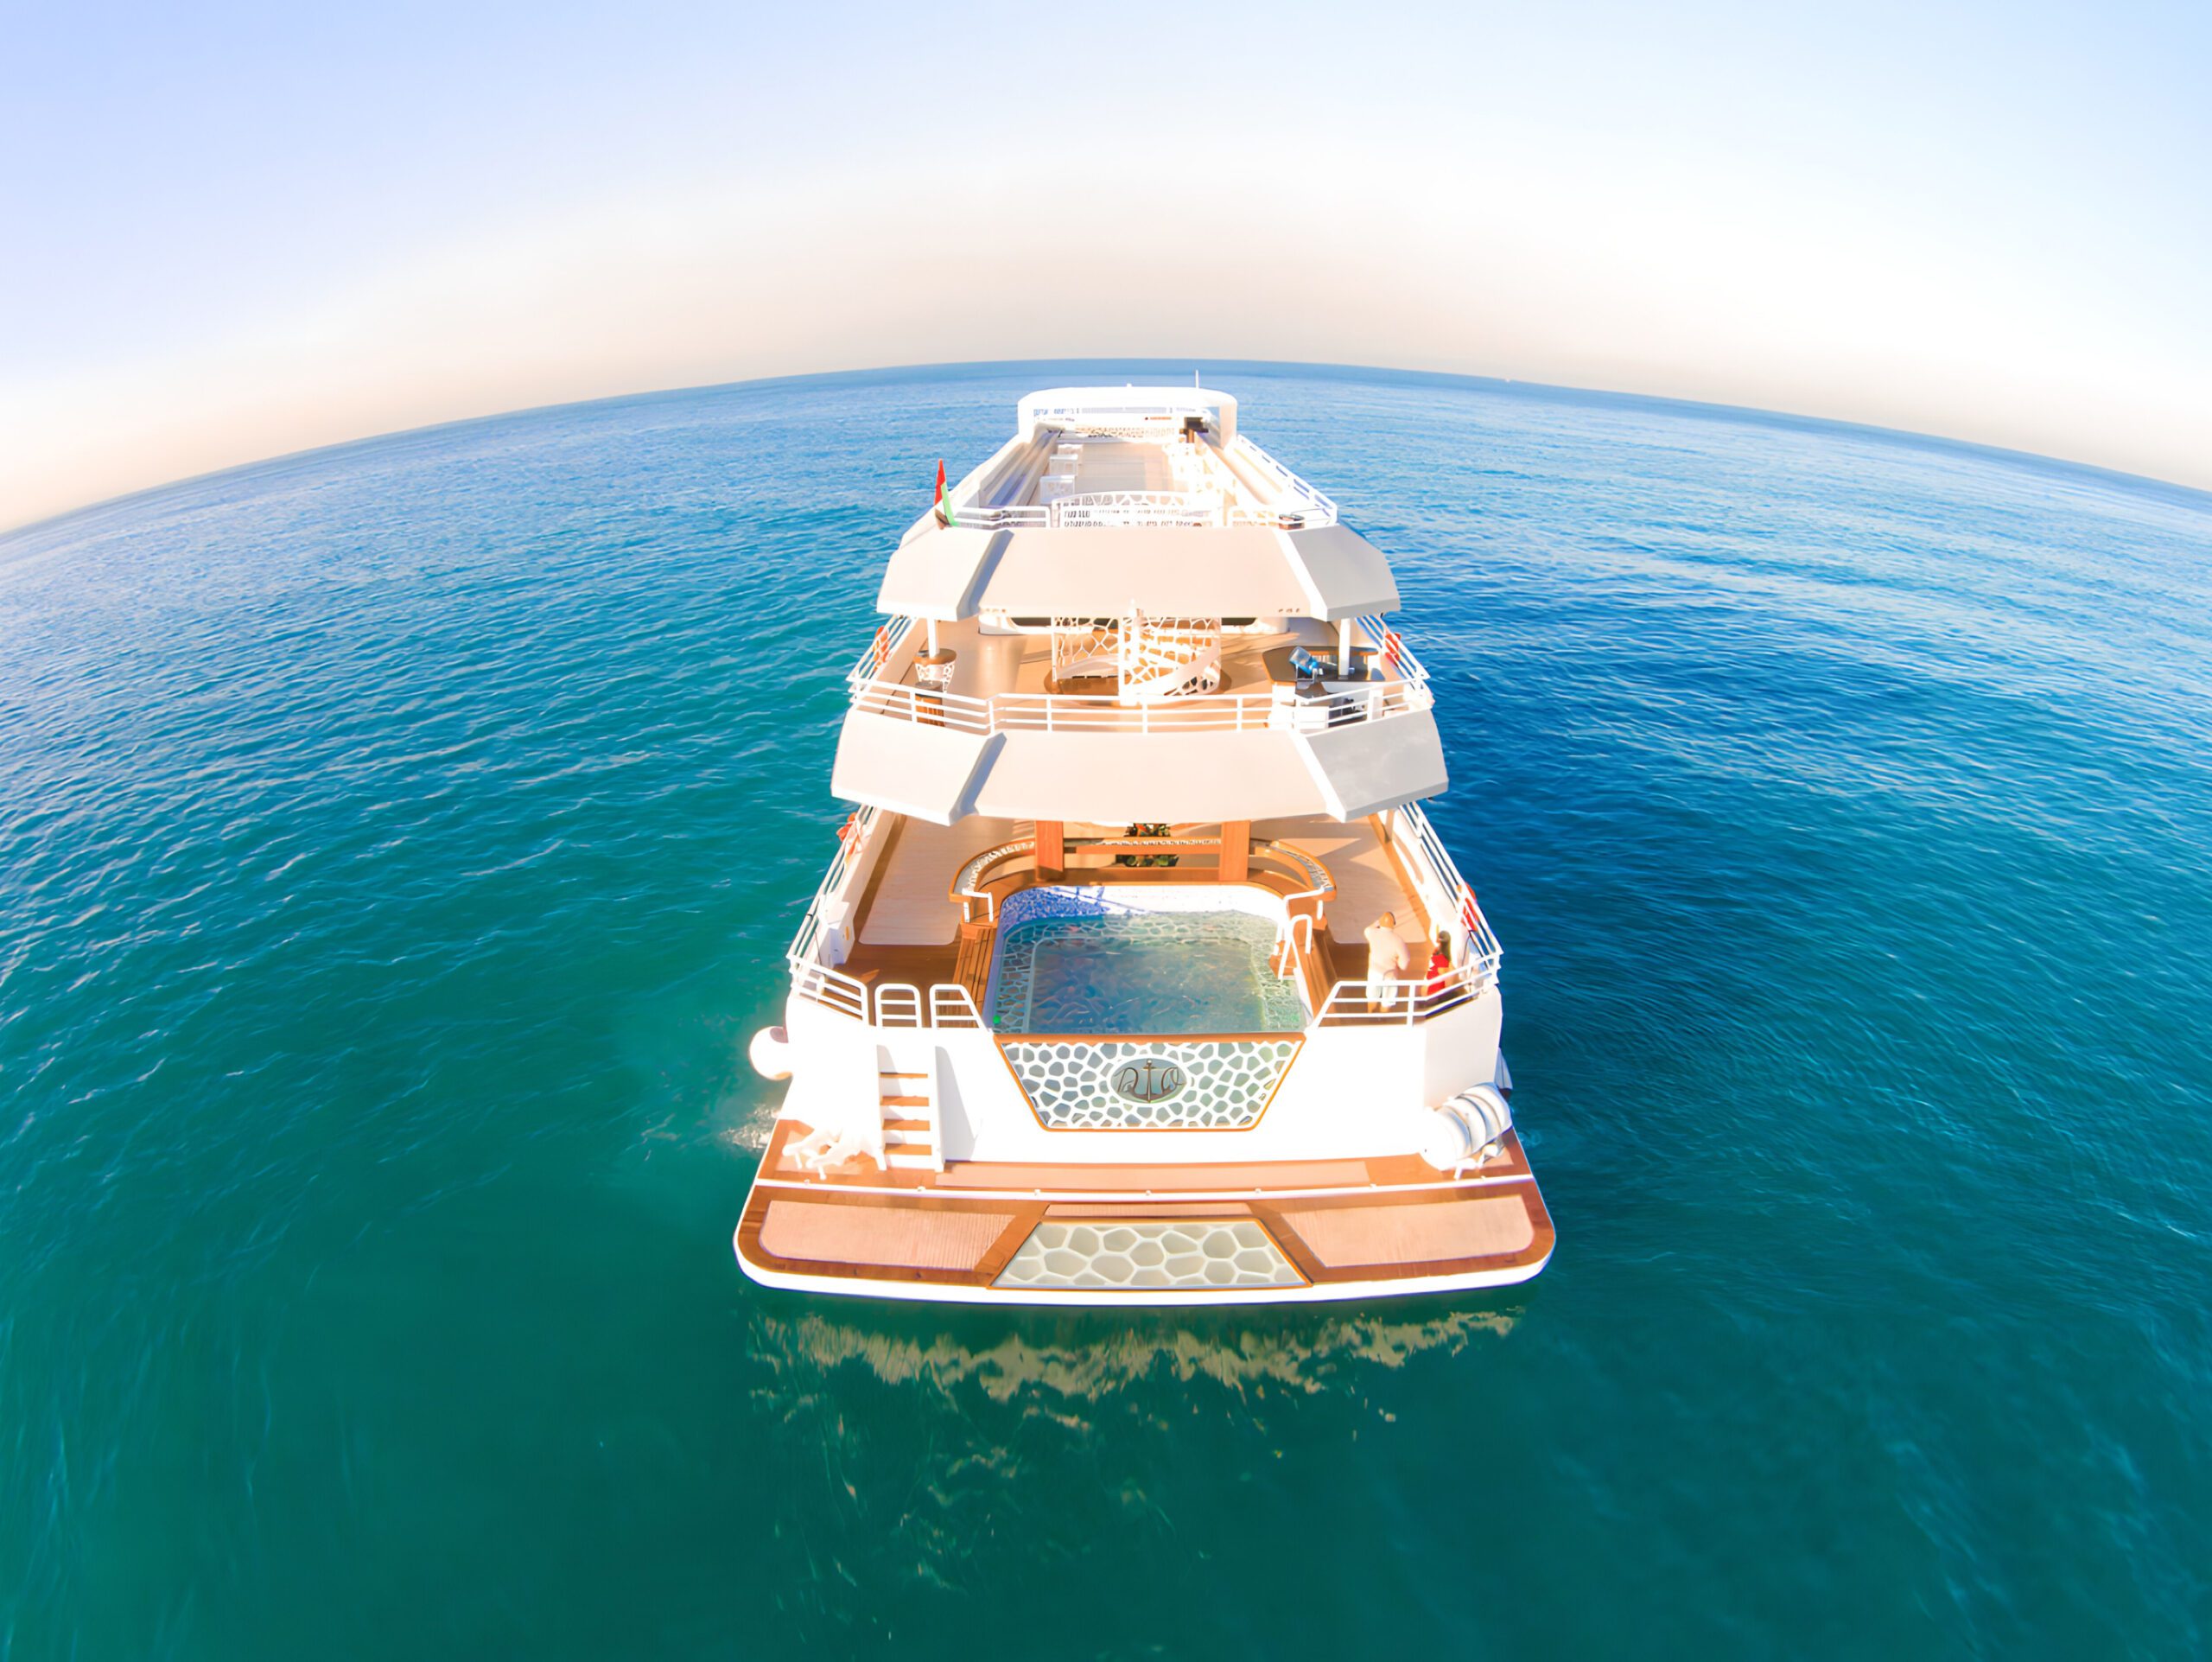 Desert Rose 155 ft luxury yacht rent in Dubai - Gold's Yacht